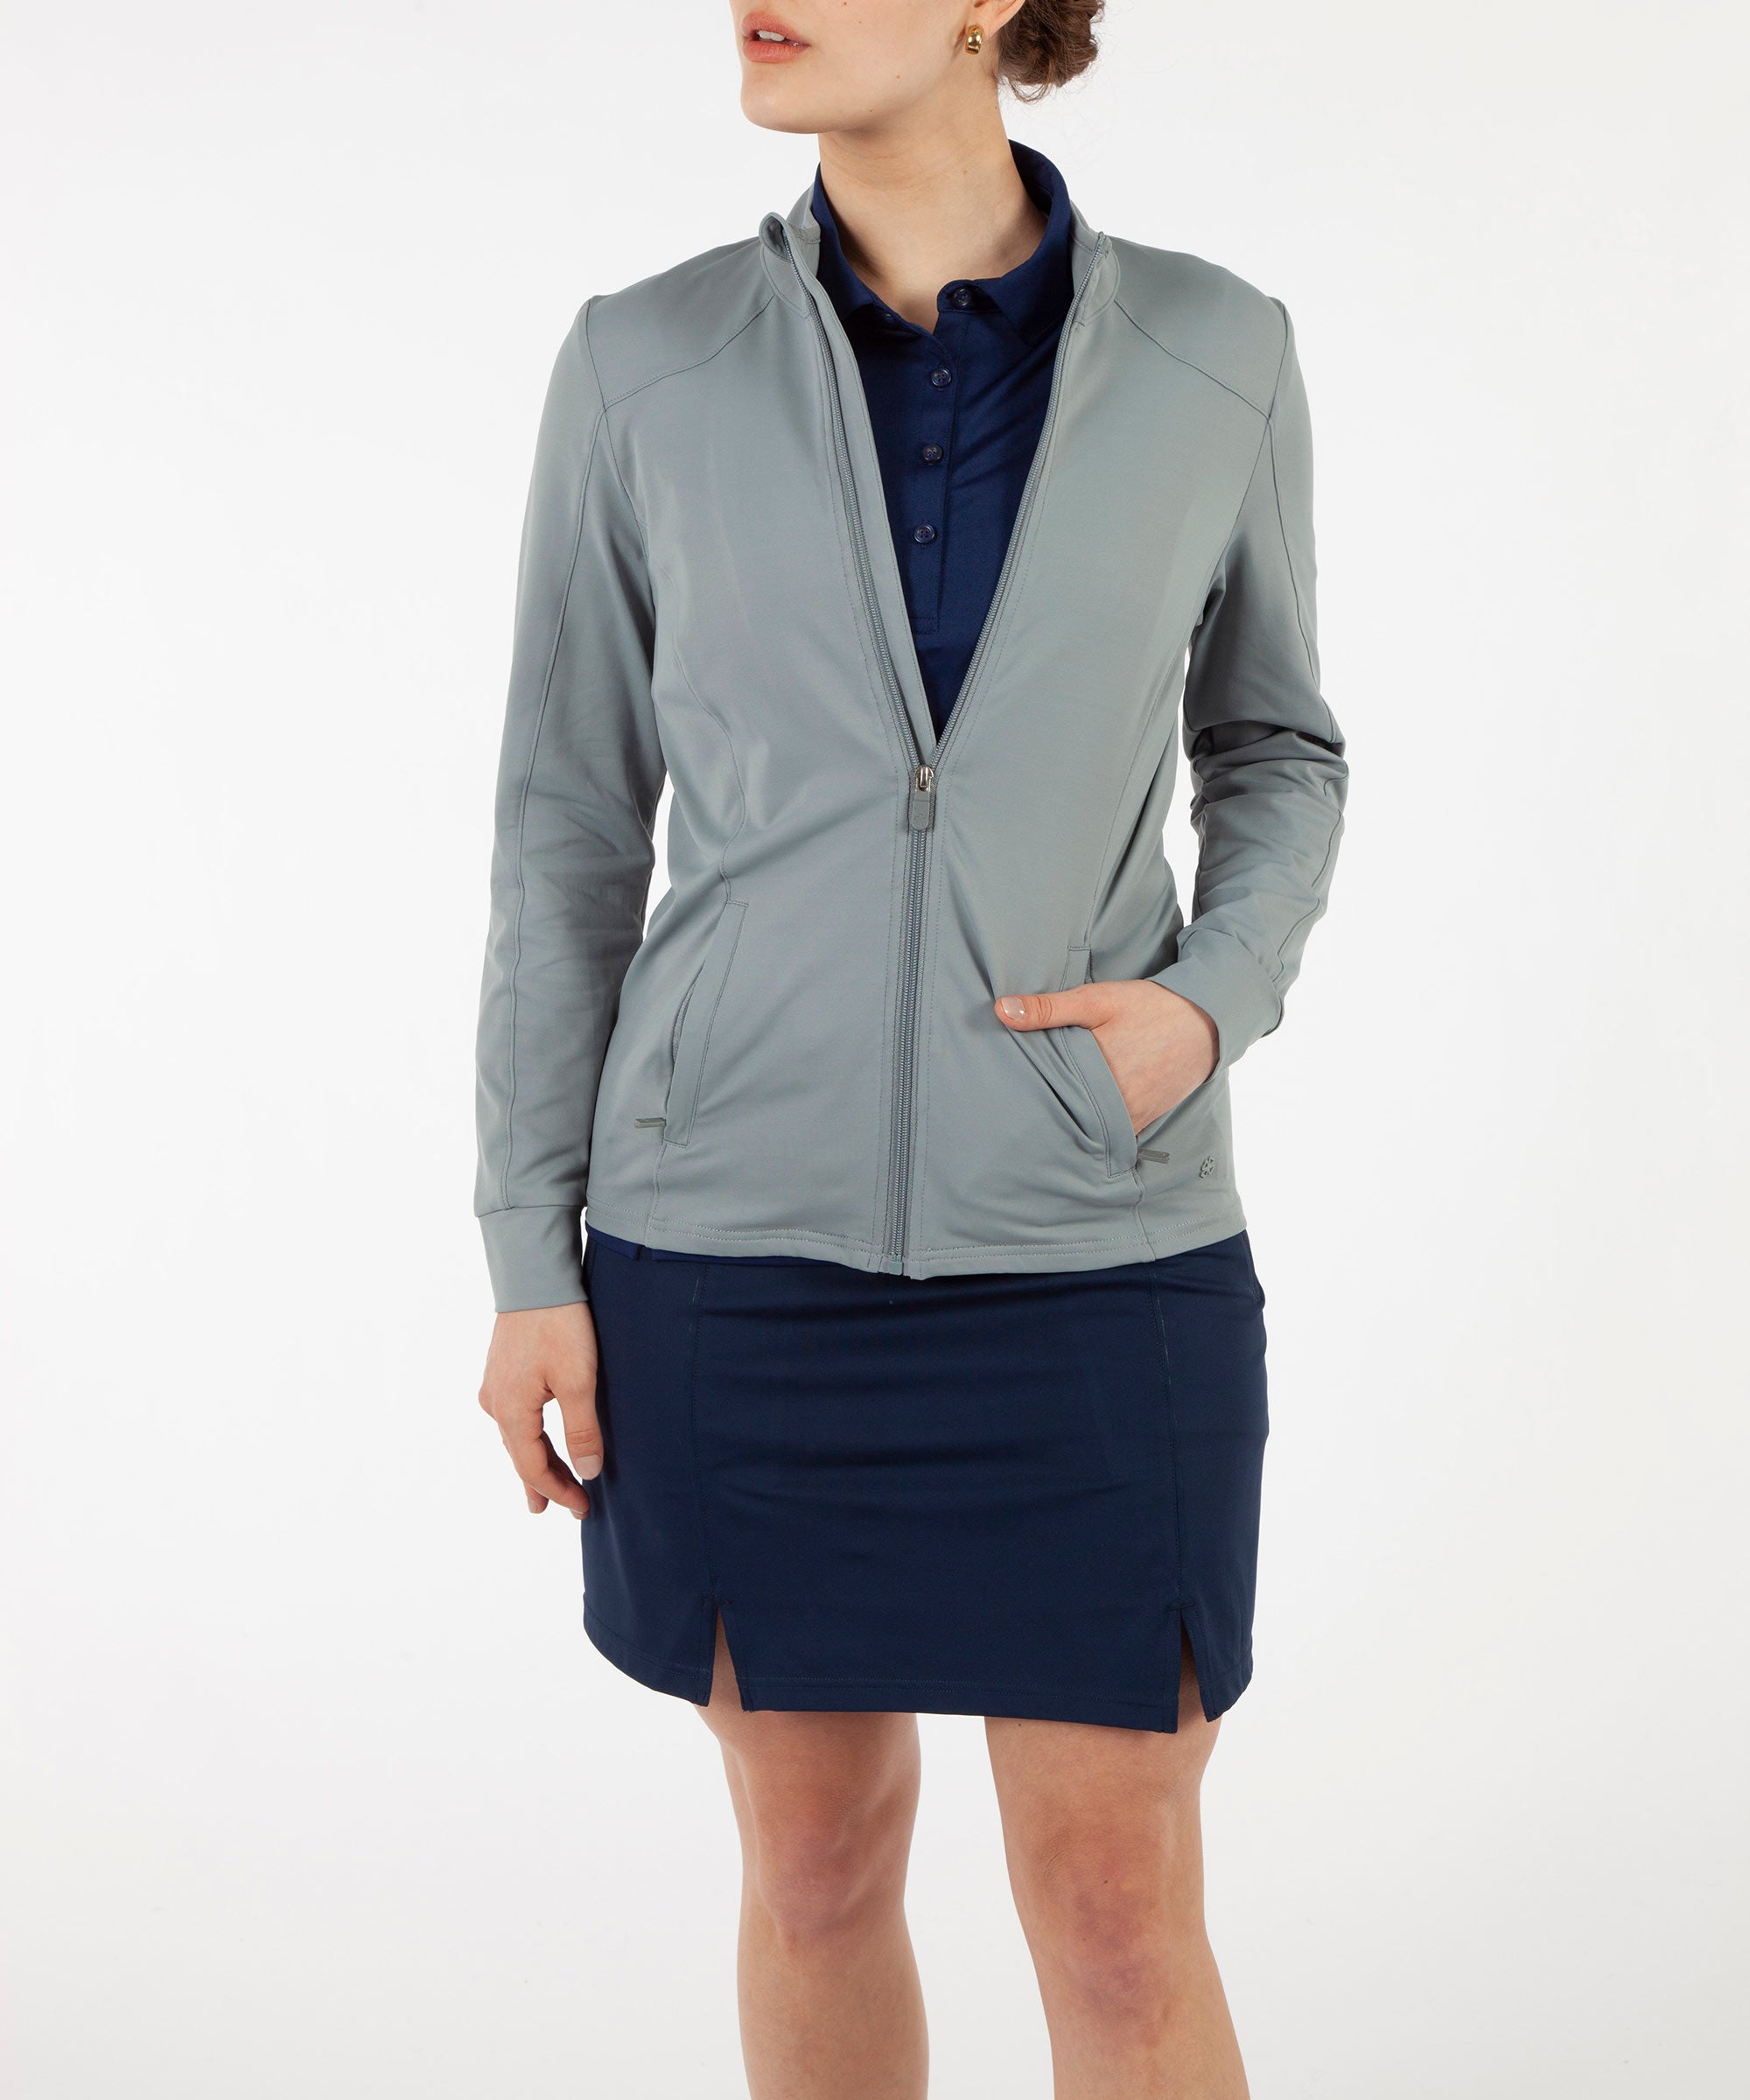 Women's Tech Solid Full-Zip Jacket